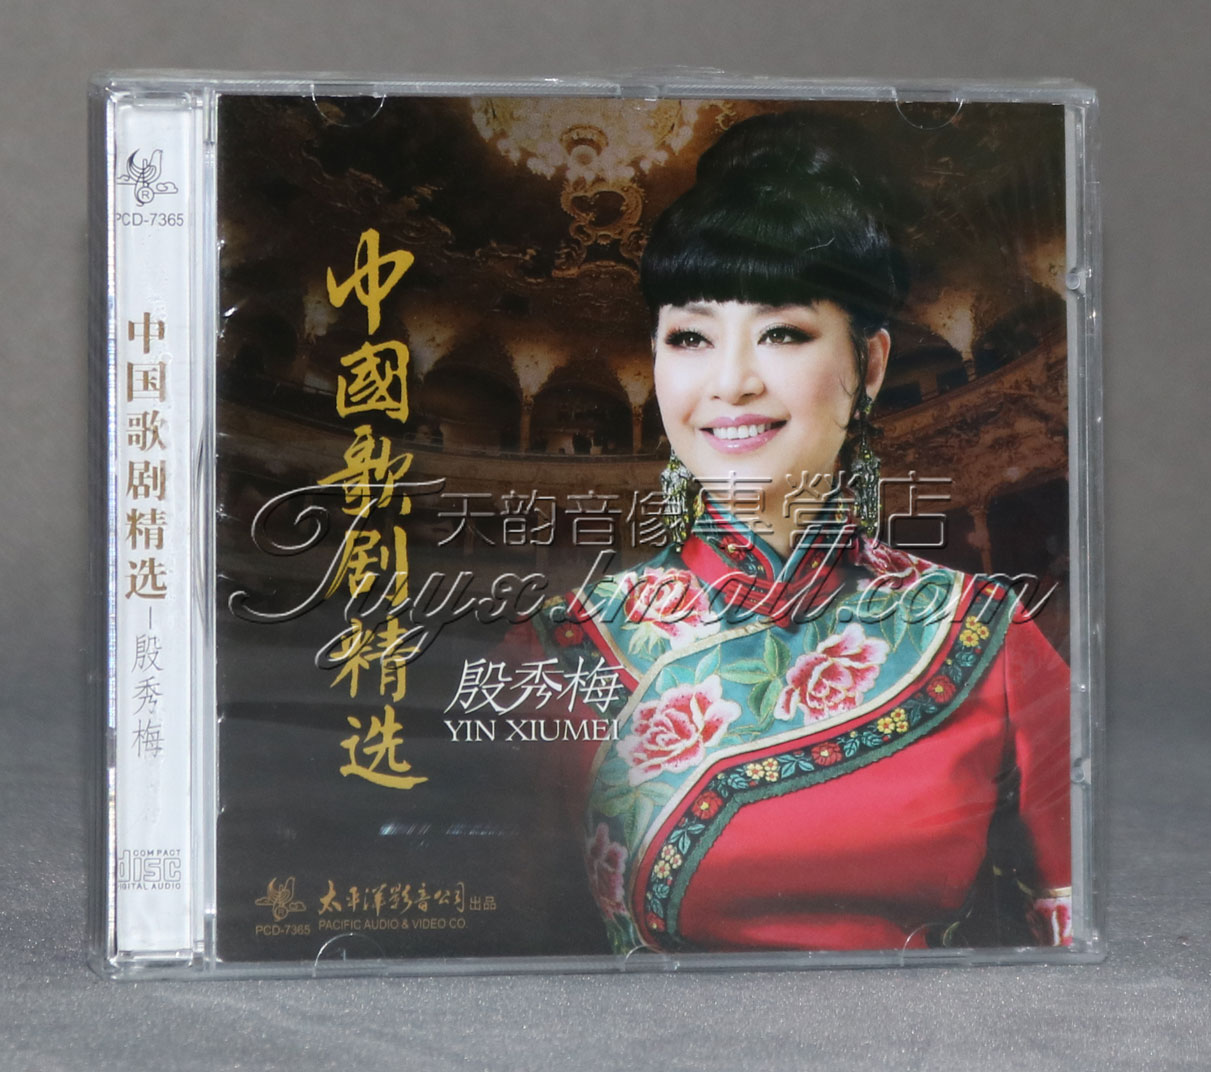 正版 太平洋唱片 著名女高音歌唱家 殷秀梅 中国歌剧精选 1CD